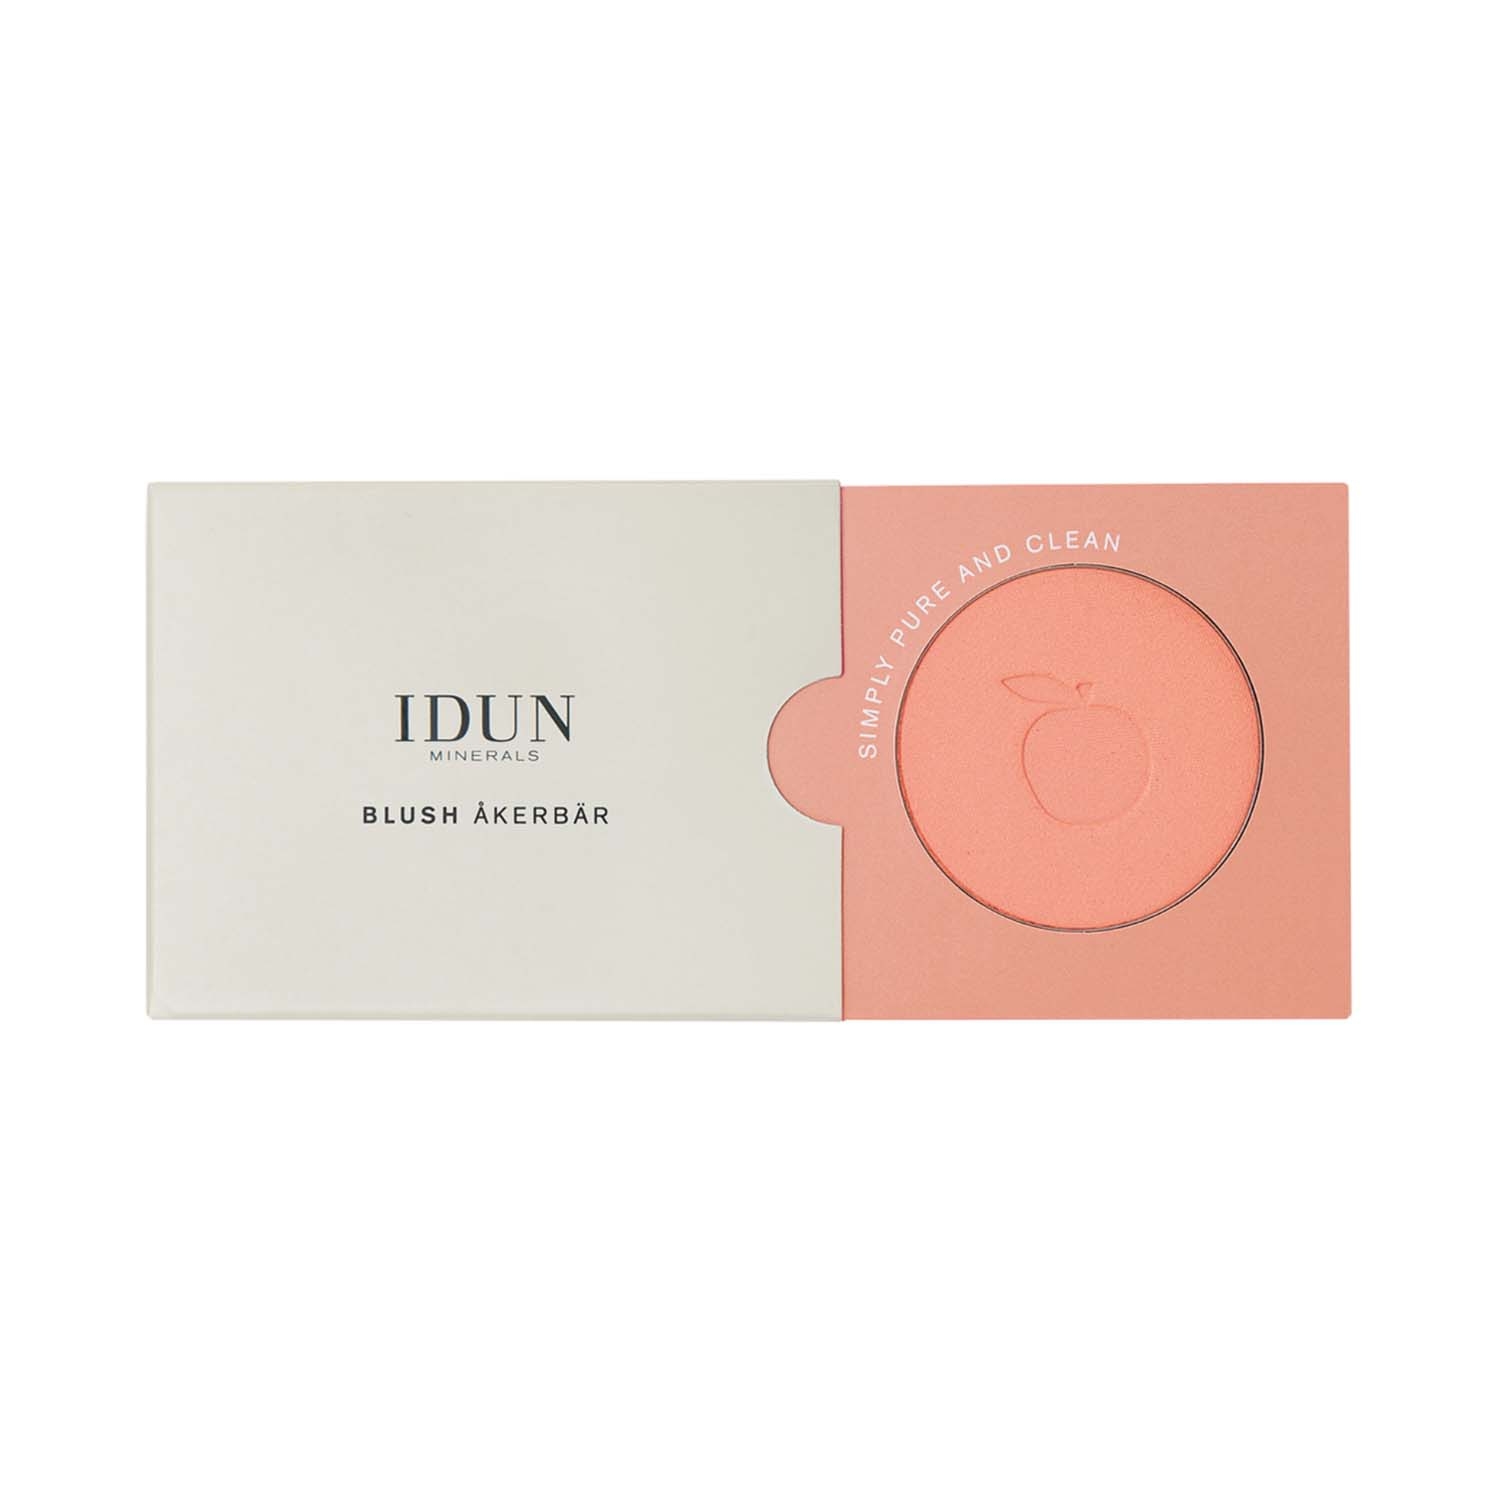 IDUN Minerals | IDUN Minerals Cheek Blush Powder - Åkerbär (5g)